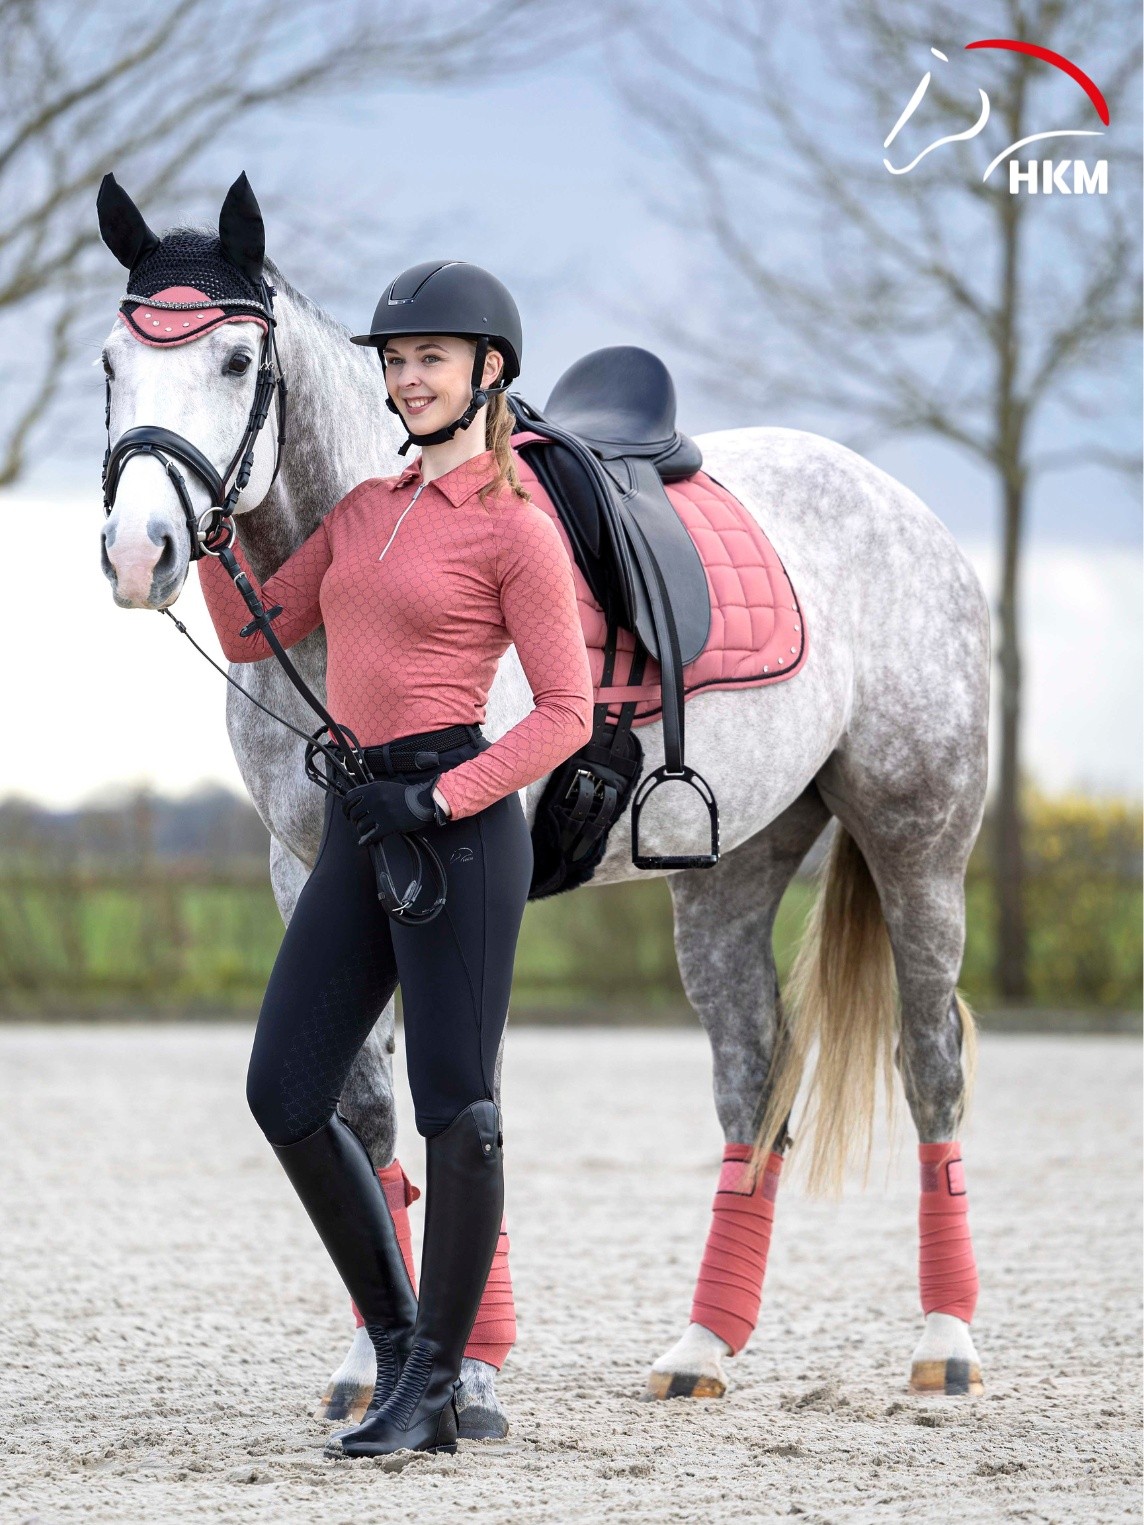 HKM Sports Equipment | Alles für Reiter und Pferd